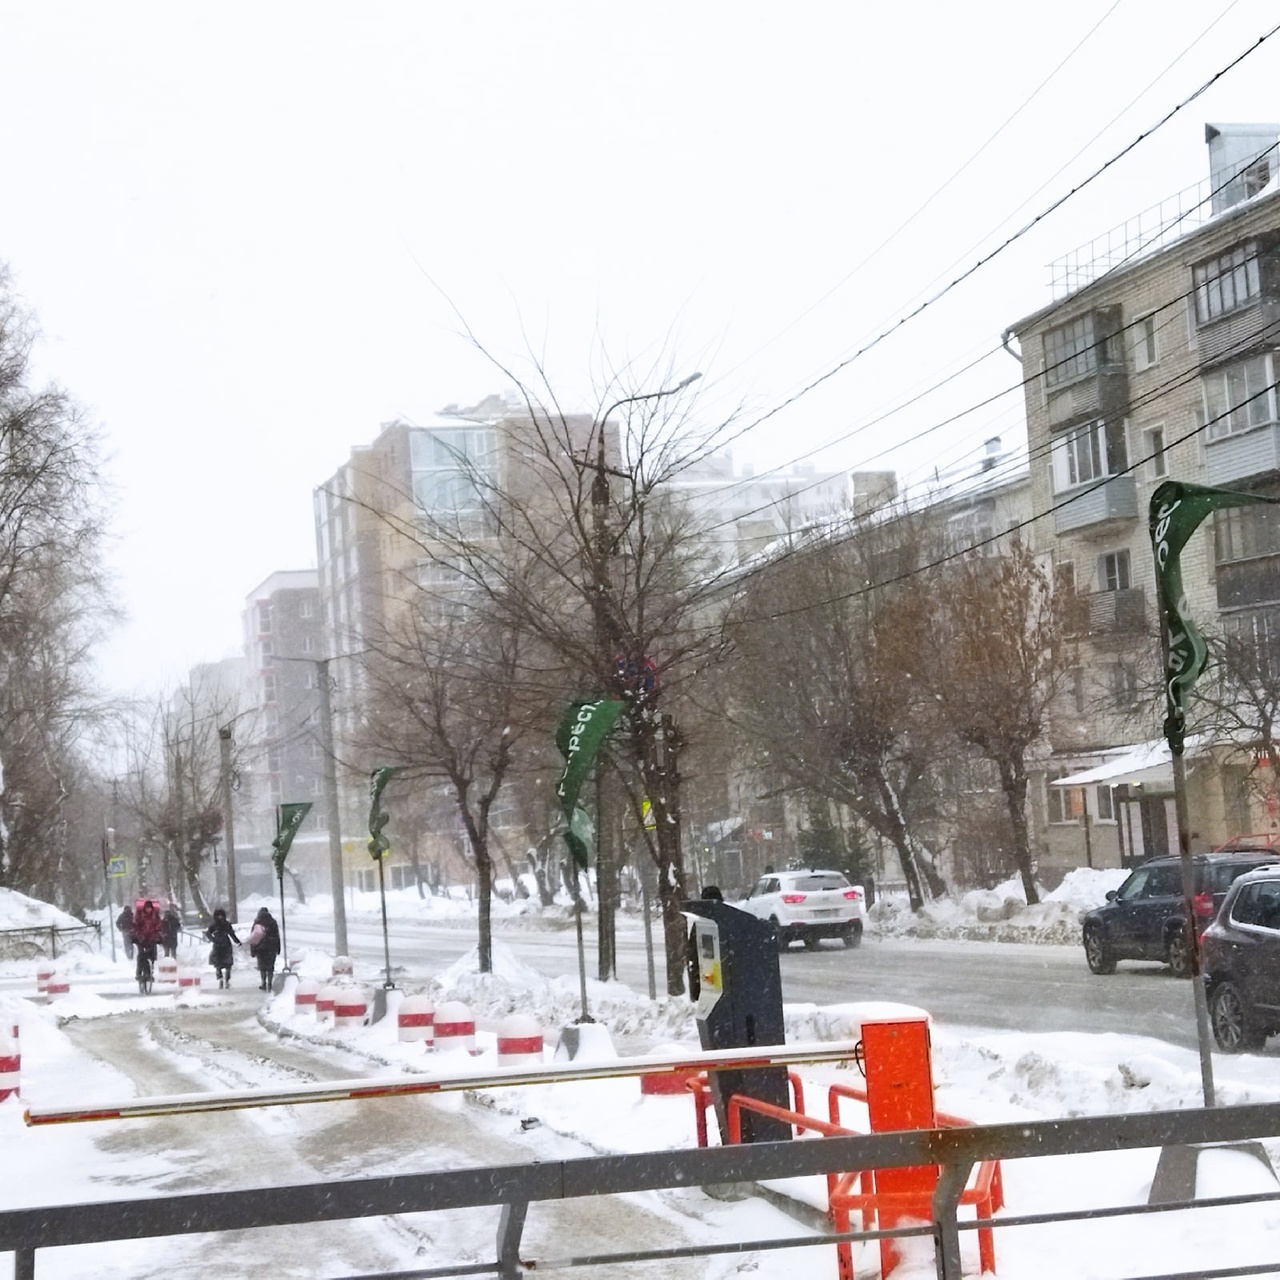 Плюс в декабре: синоптики бьют тревогу из-за ливневого снега и аномальной оттепели в Кирове